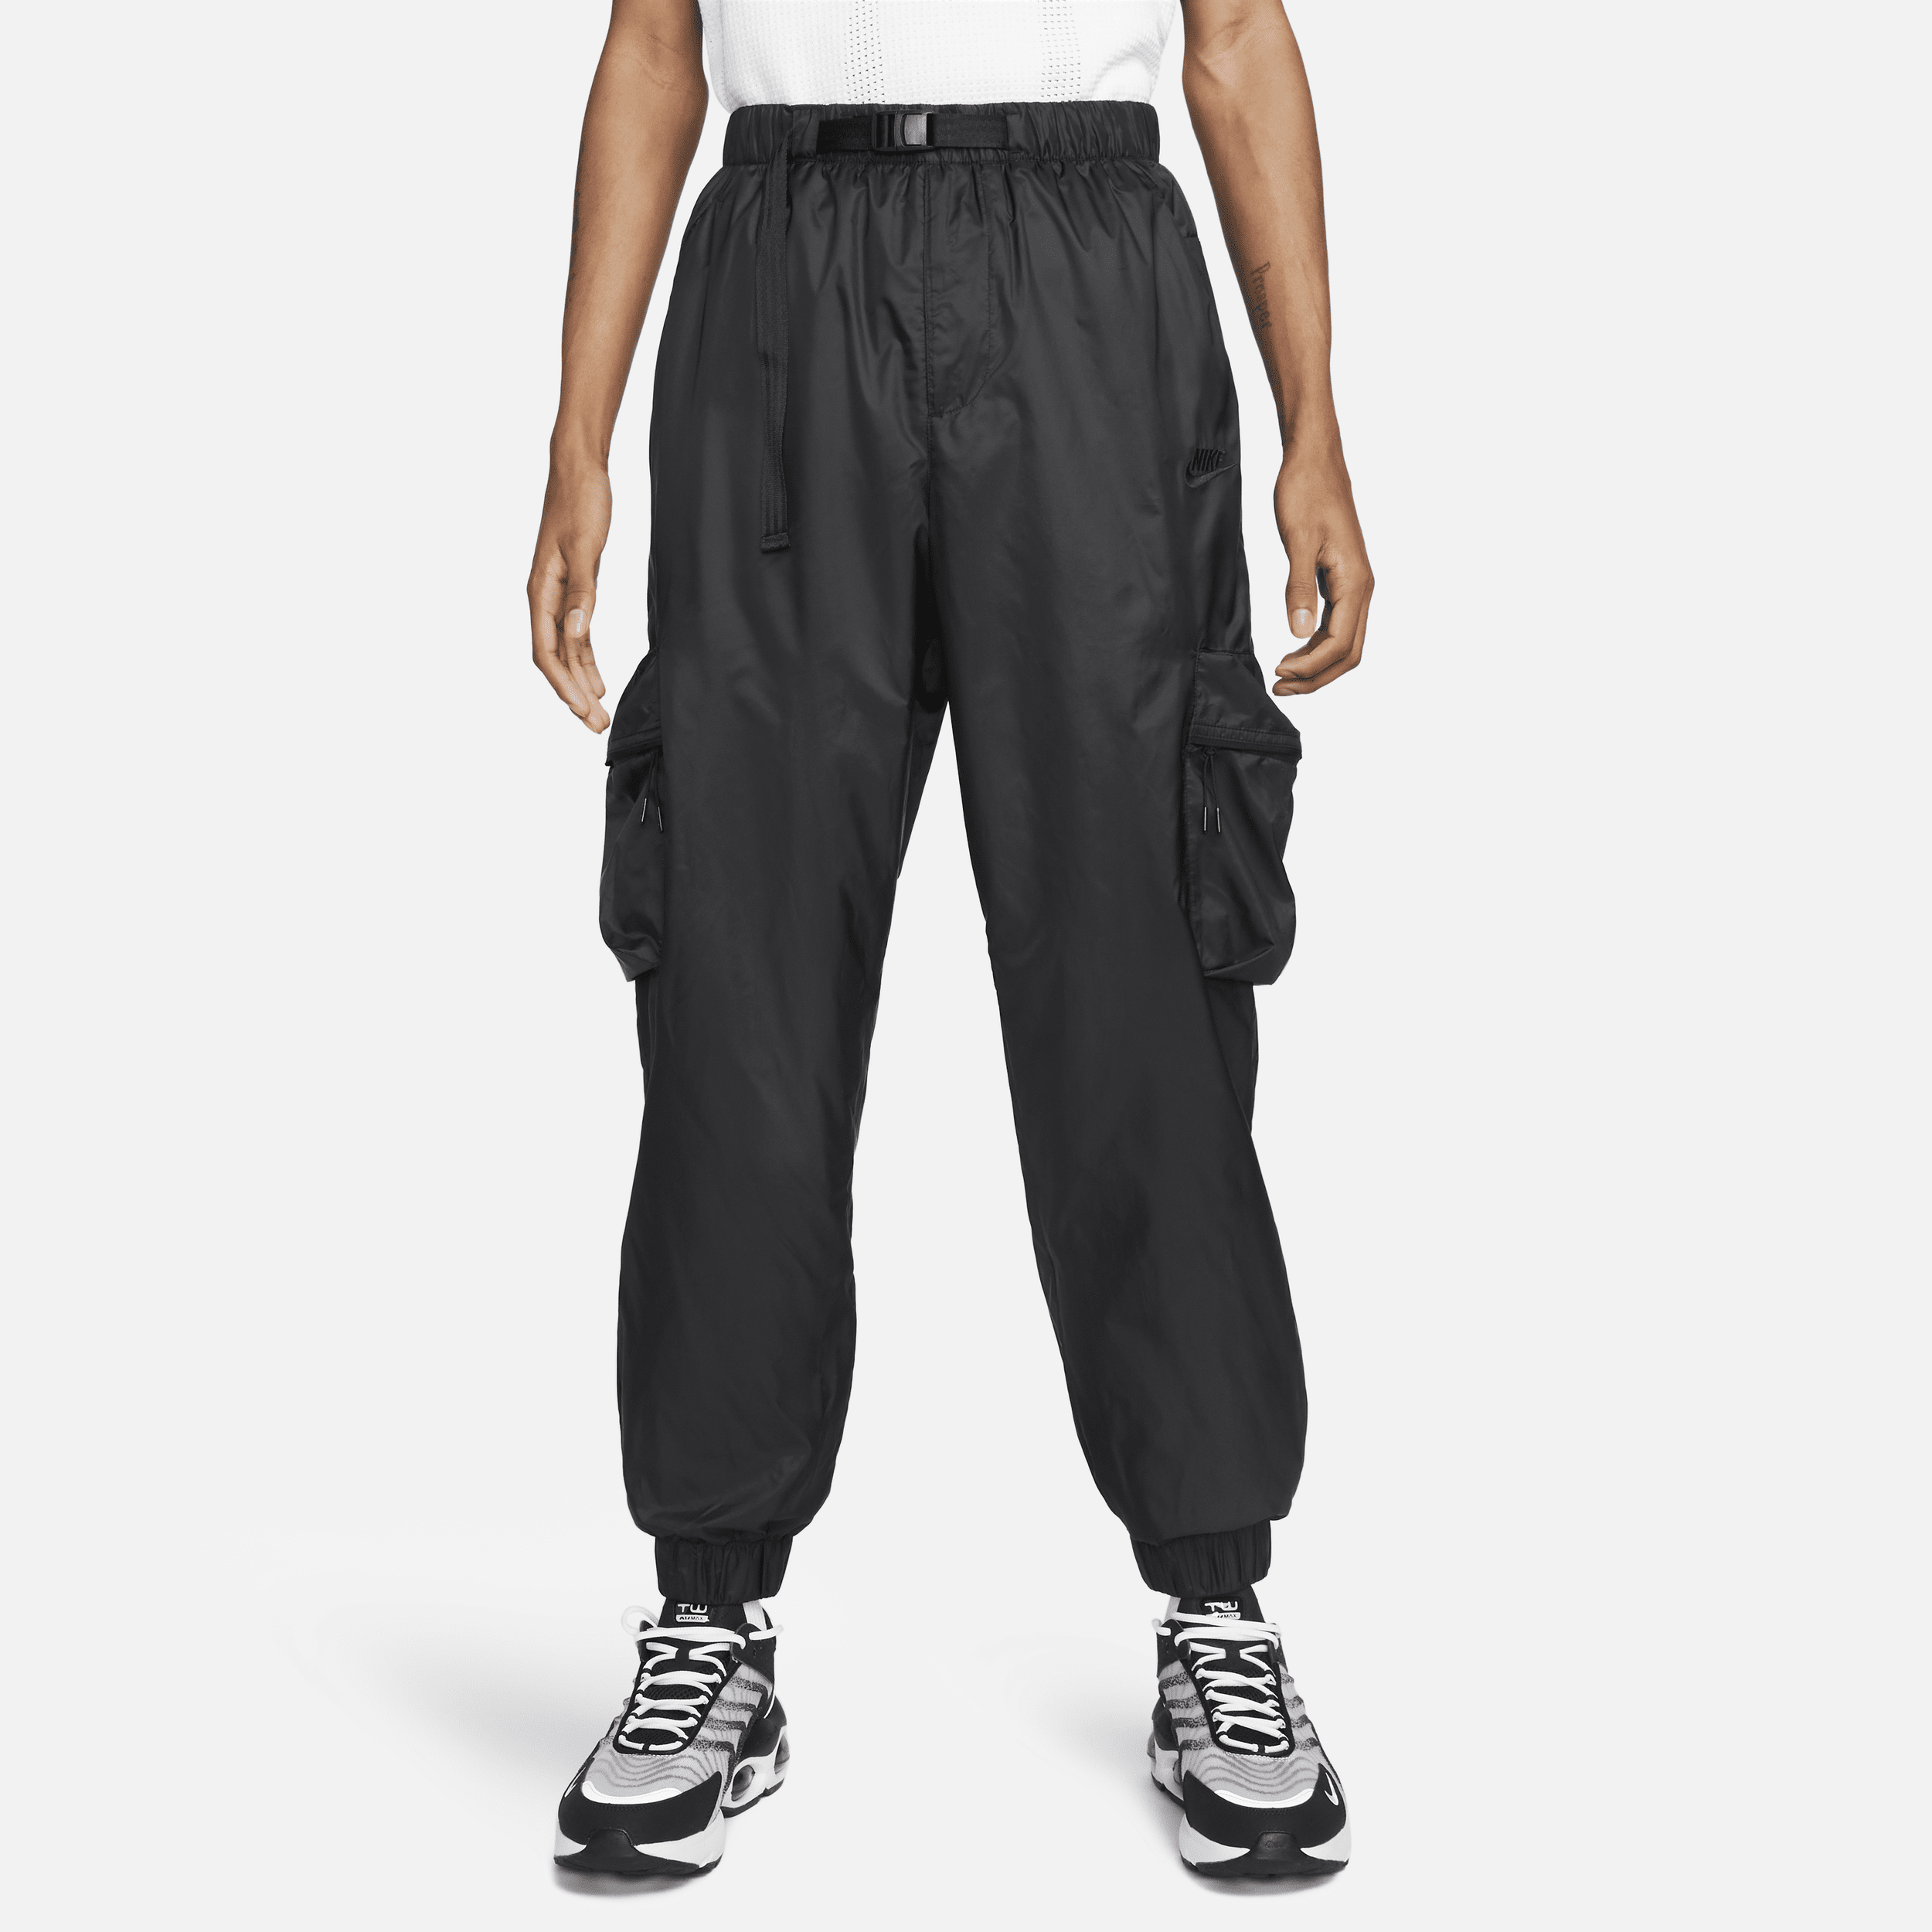 Nike Tech Pantalón de tejido Woven con forro - Hombre - Negro